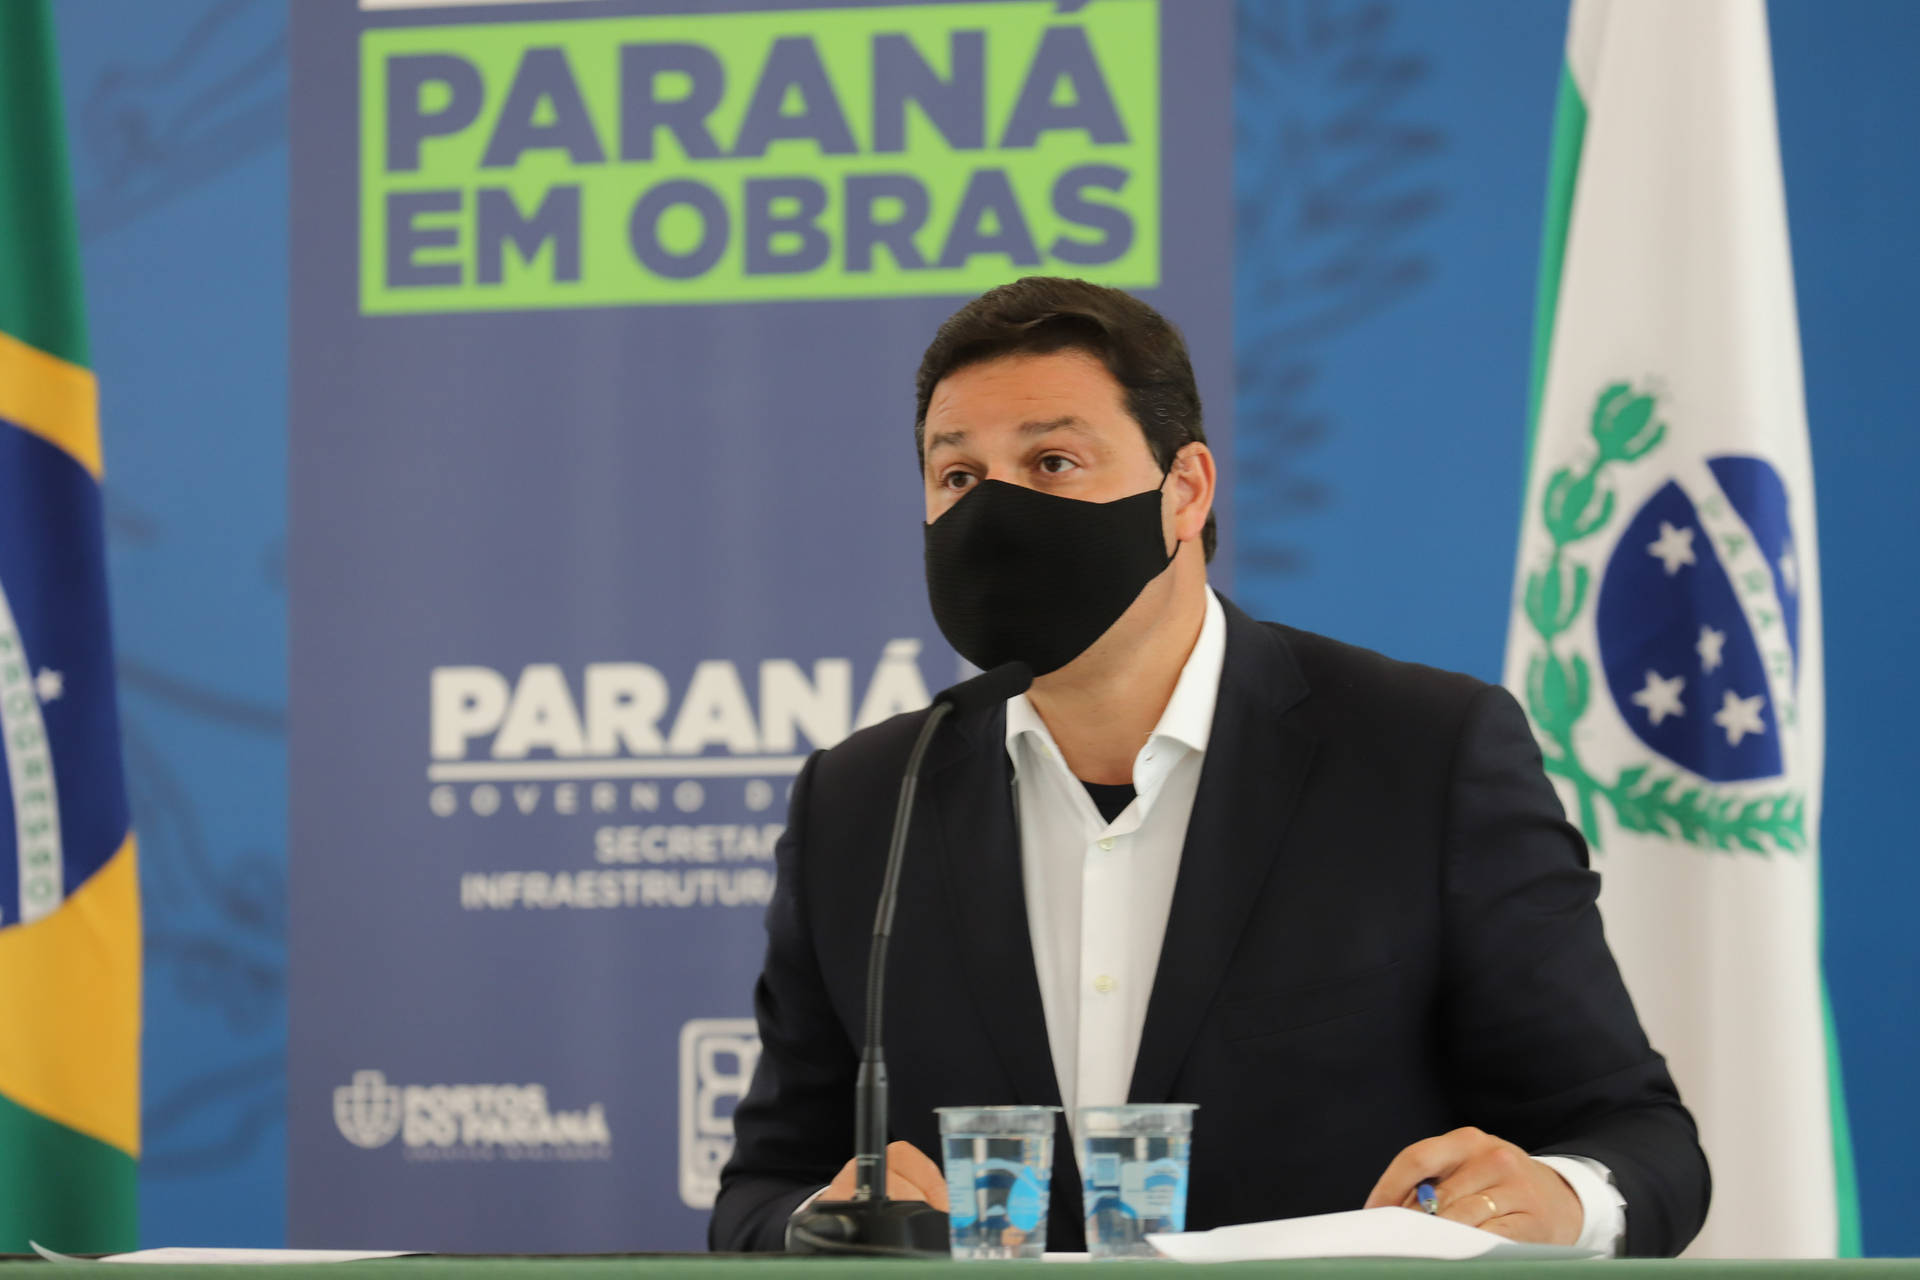 Paraná projeta redução de 50% nas tarifas dos pedágios com nova concessão, diz secretário